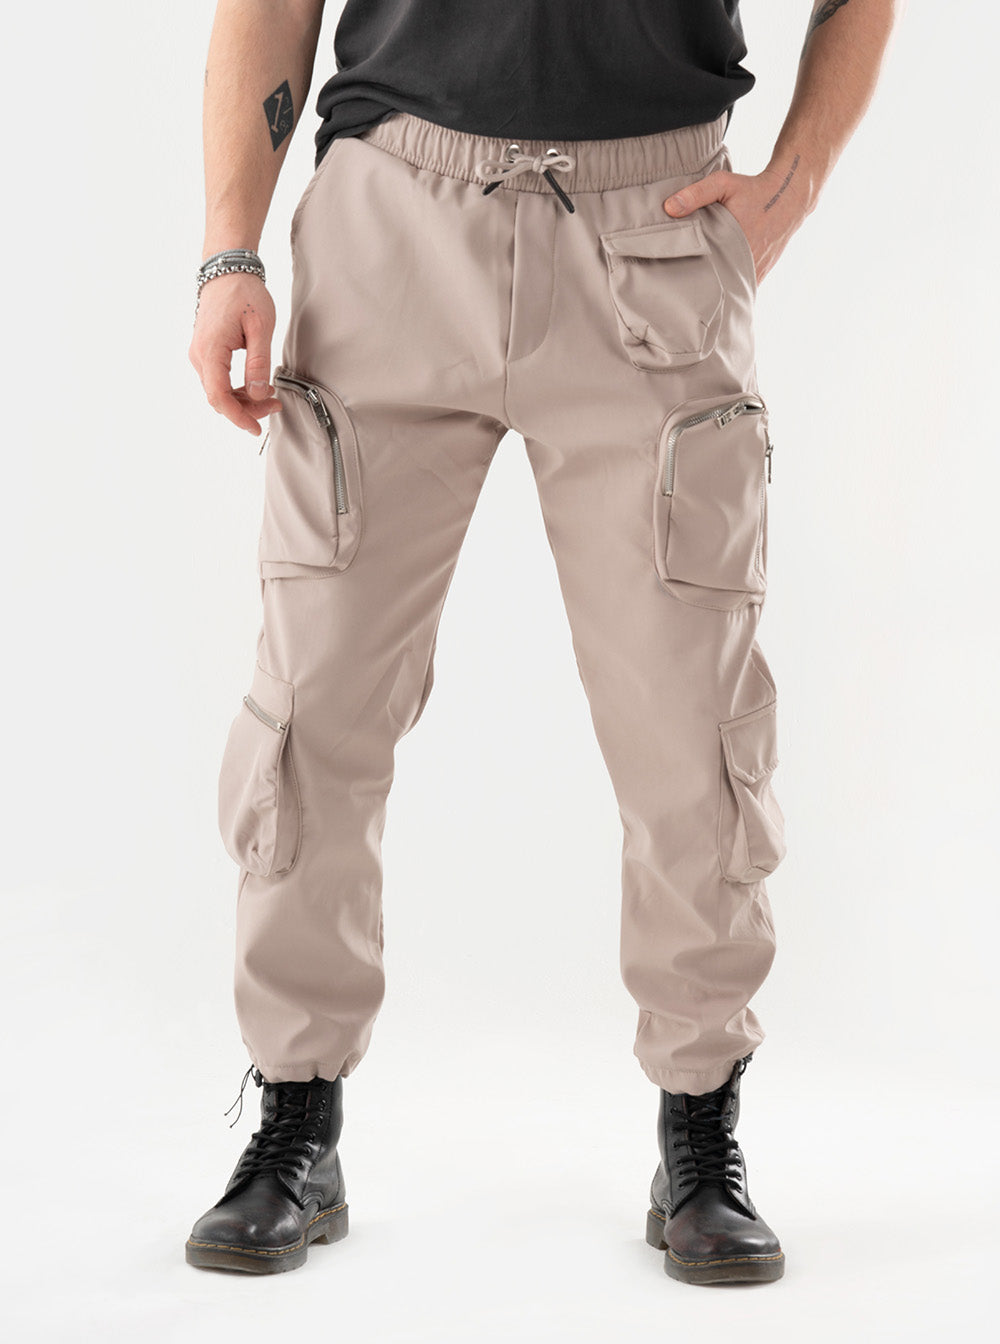 SERNES Style Men - Sweatpants Joggers & Streetwear for